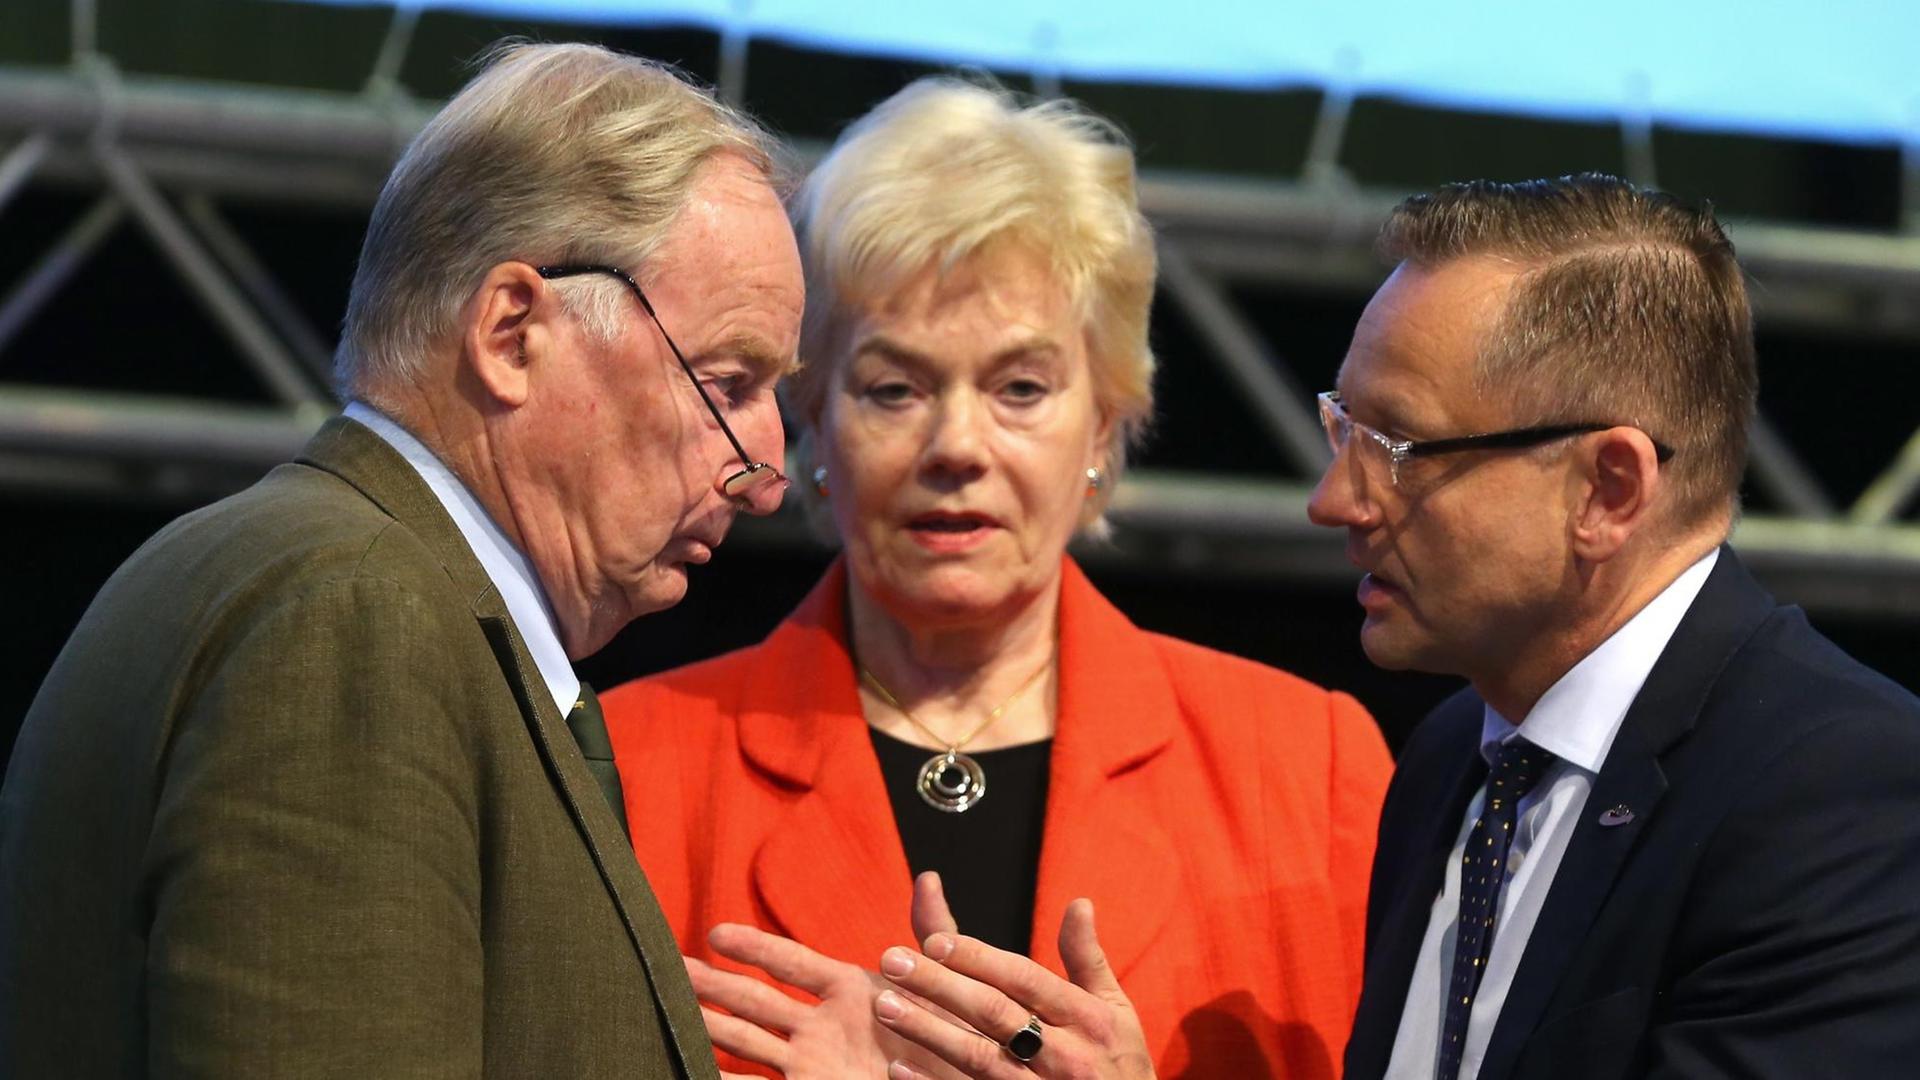 Erika Steinbach, frühere CDU-Politikerin und Leiterin der Desiderius-Erasmus-Stiftung, gemeinsam mit den AfD-Spitzenpolitikern Alexander Gauland (links im Bild) und Kay Gottschalk (rechts)